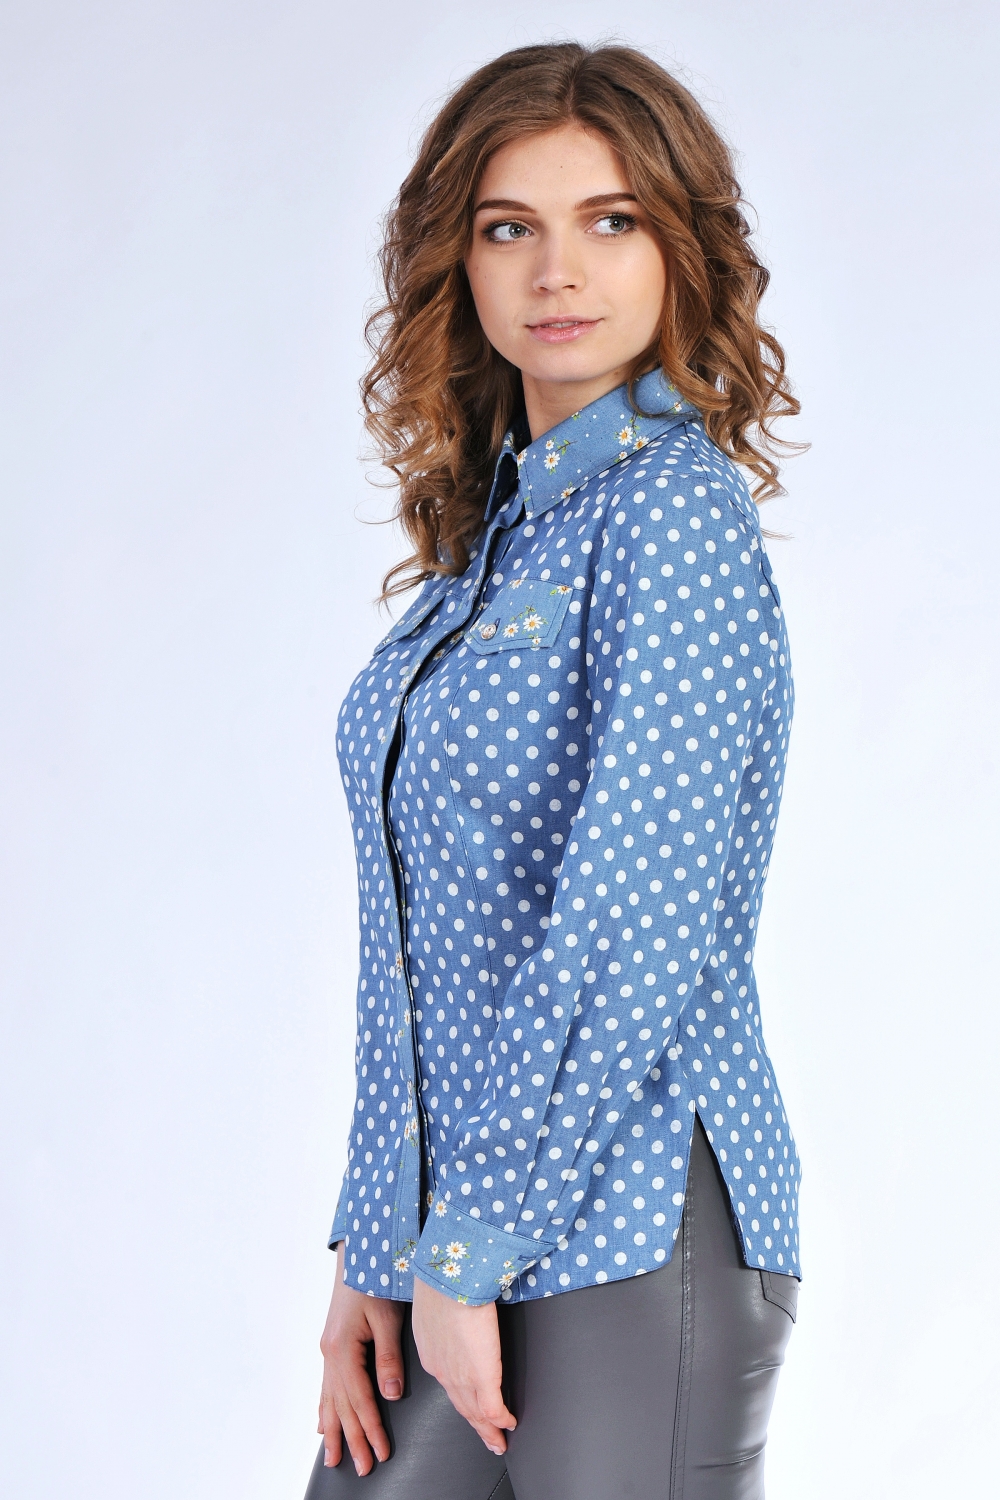 Джинсовая женская рубашка с принтом